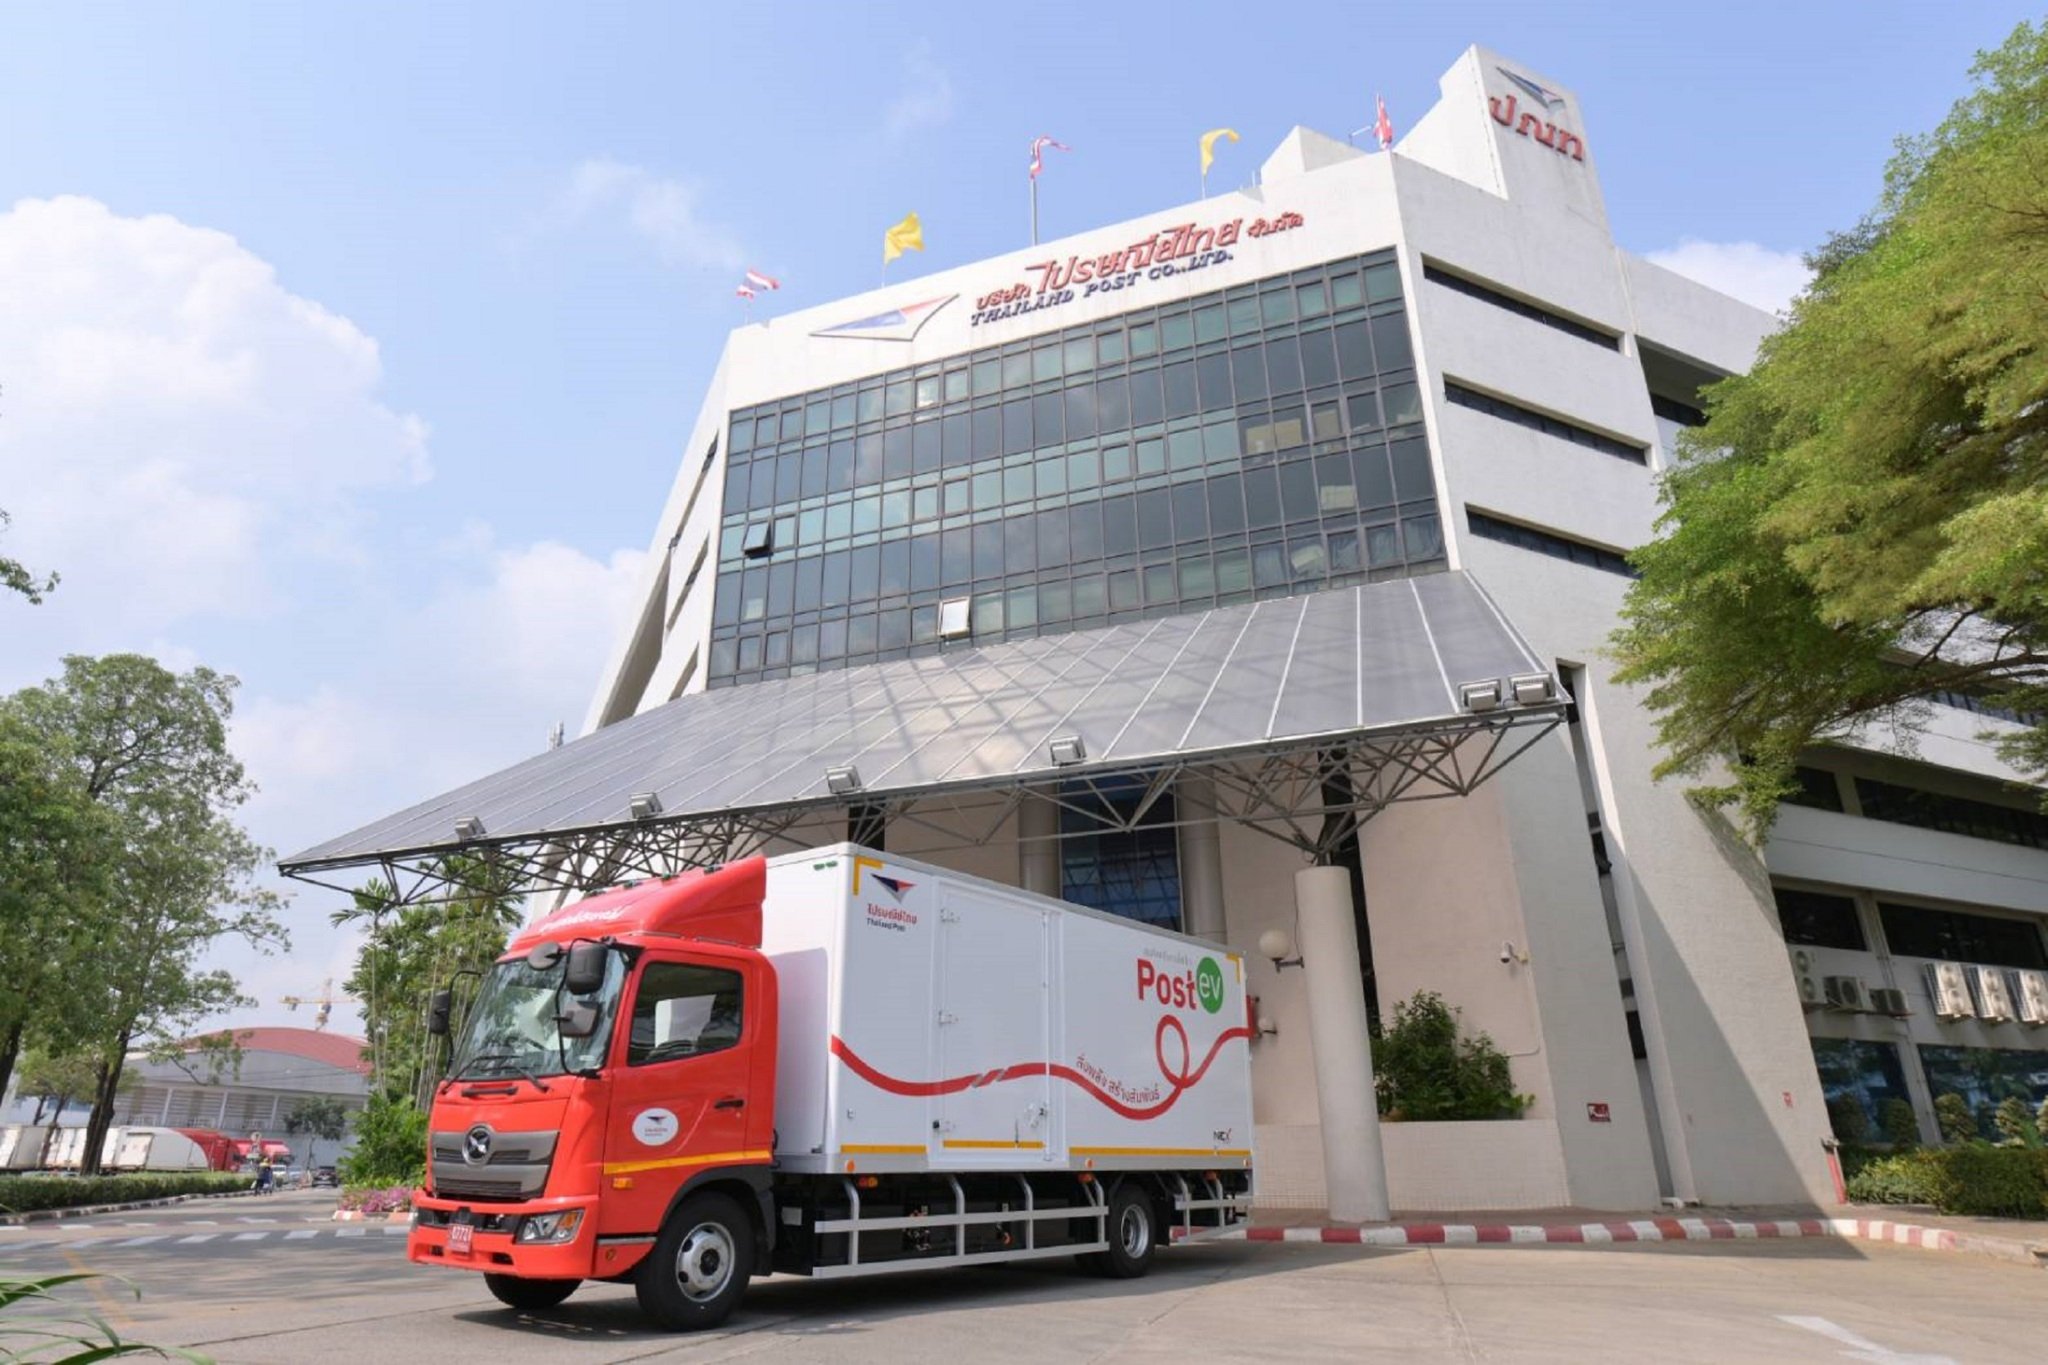 ไปรษณีย์ไทยพลิกกำไร โลจิสติกส์ทุบสถิติโตเด่นสุดหนุนรายได้ทะลุ 2 หมื่นล้าน